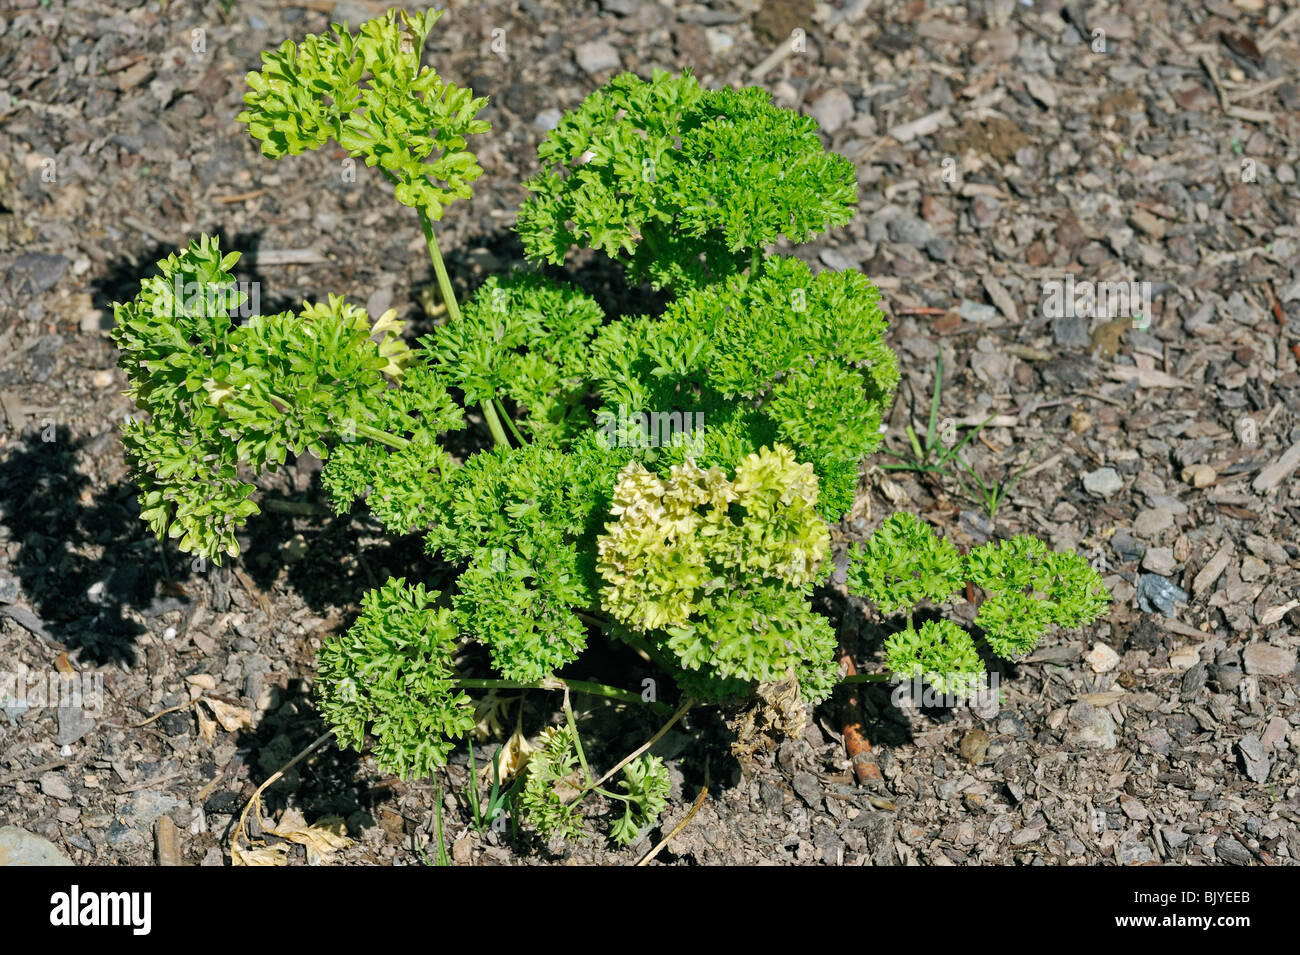 Parsley (Petroselinum crispum) in field, Belgium Stock Photo